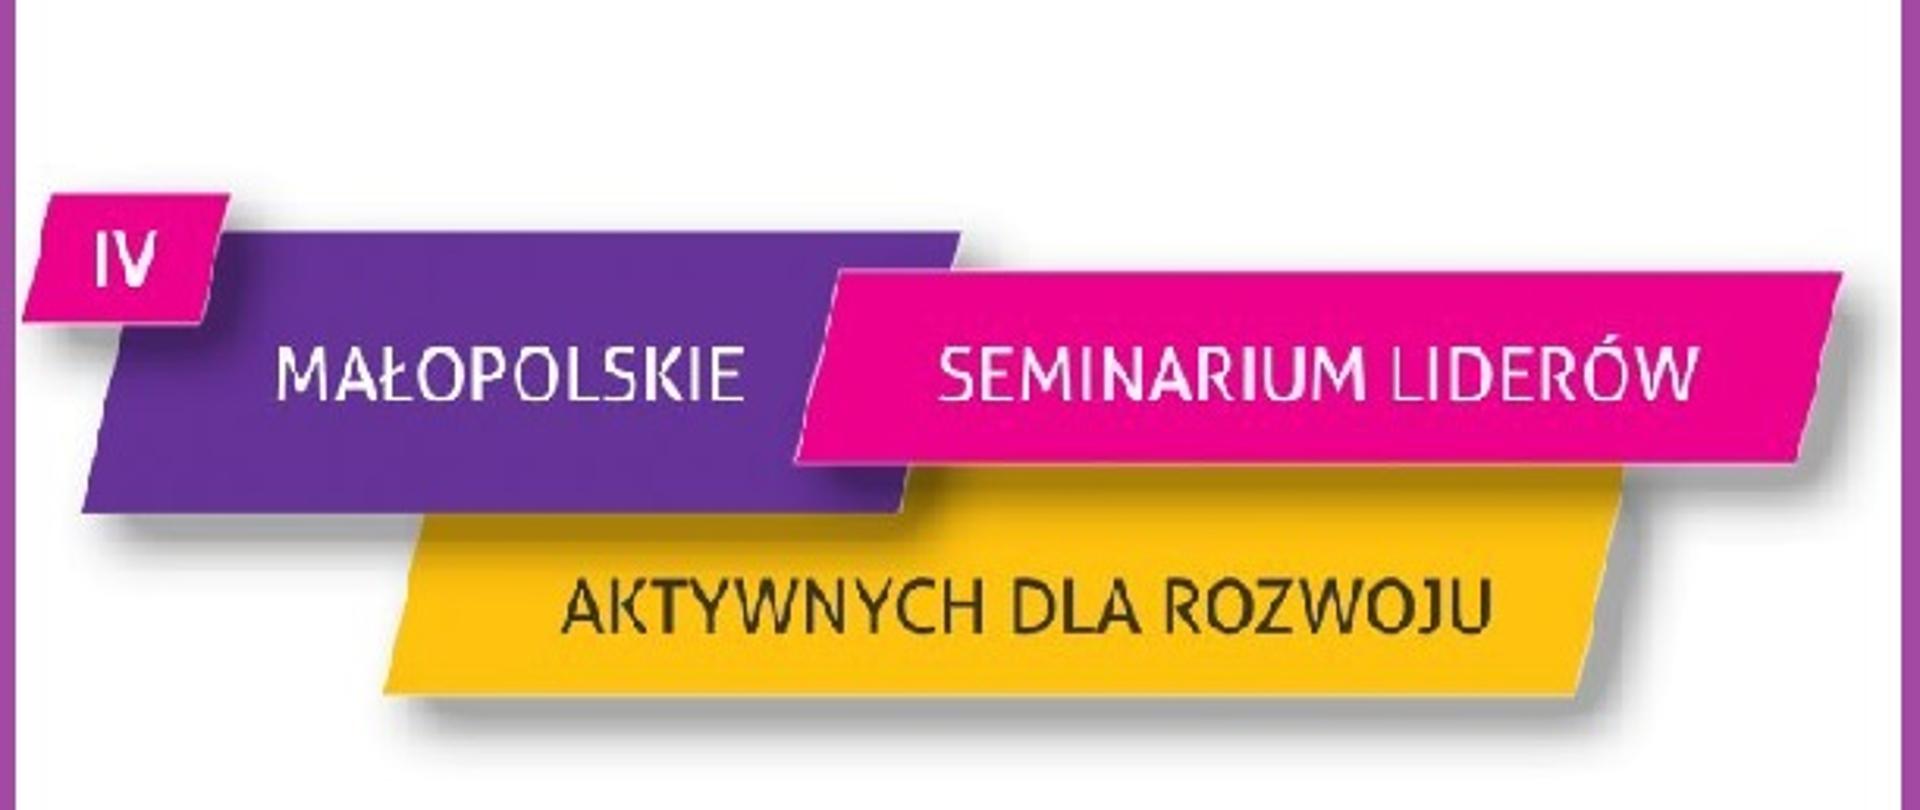 LOGO z napisem Małopolskie Seminarium Liderów Aktywnych dla rozwoju"